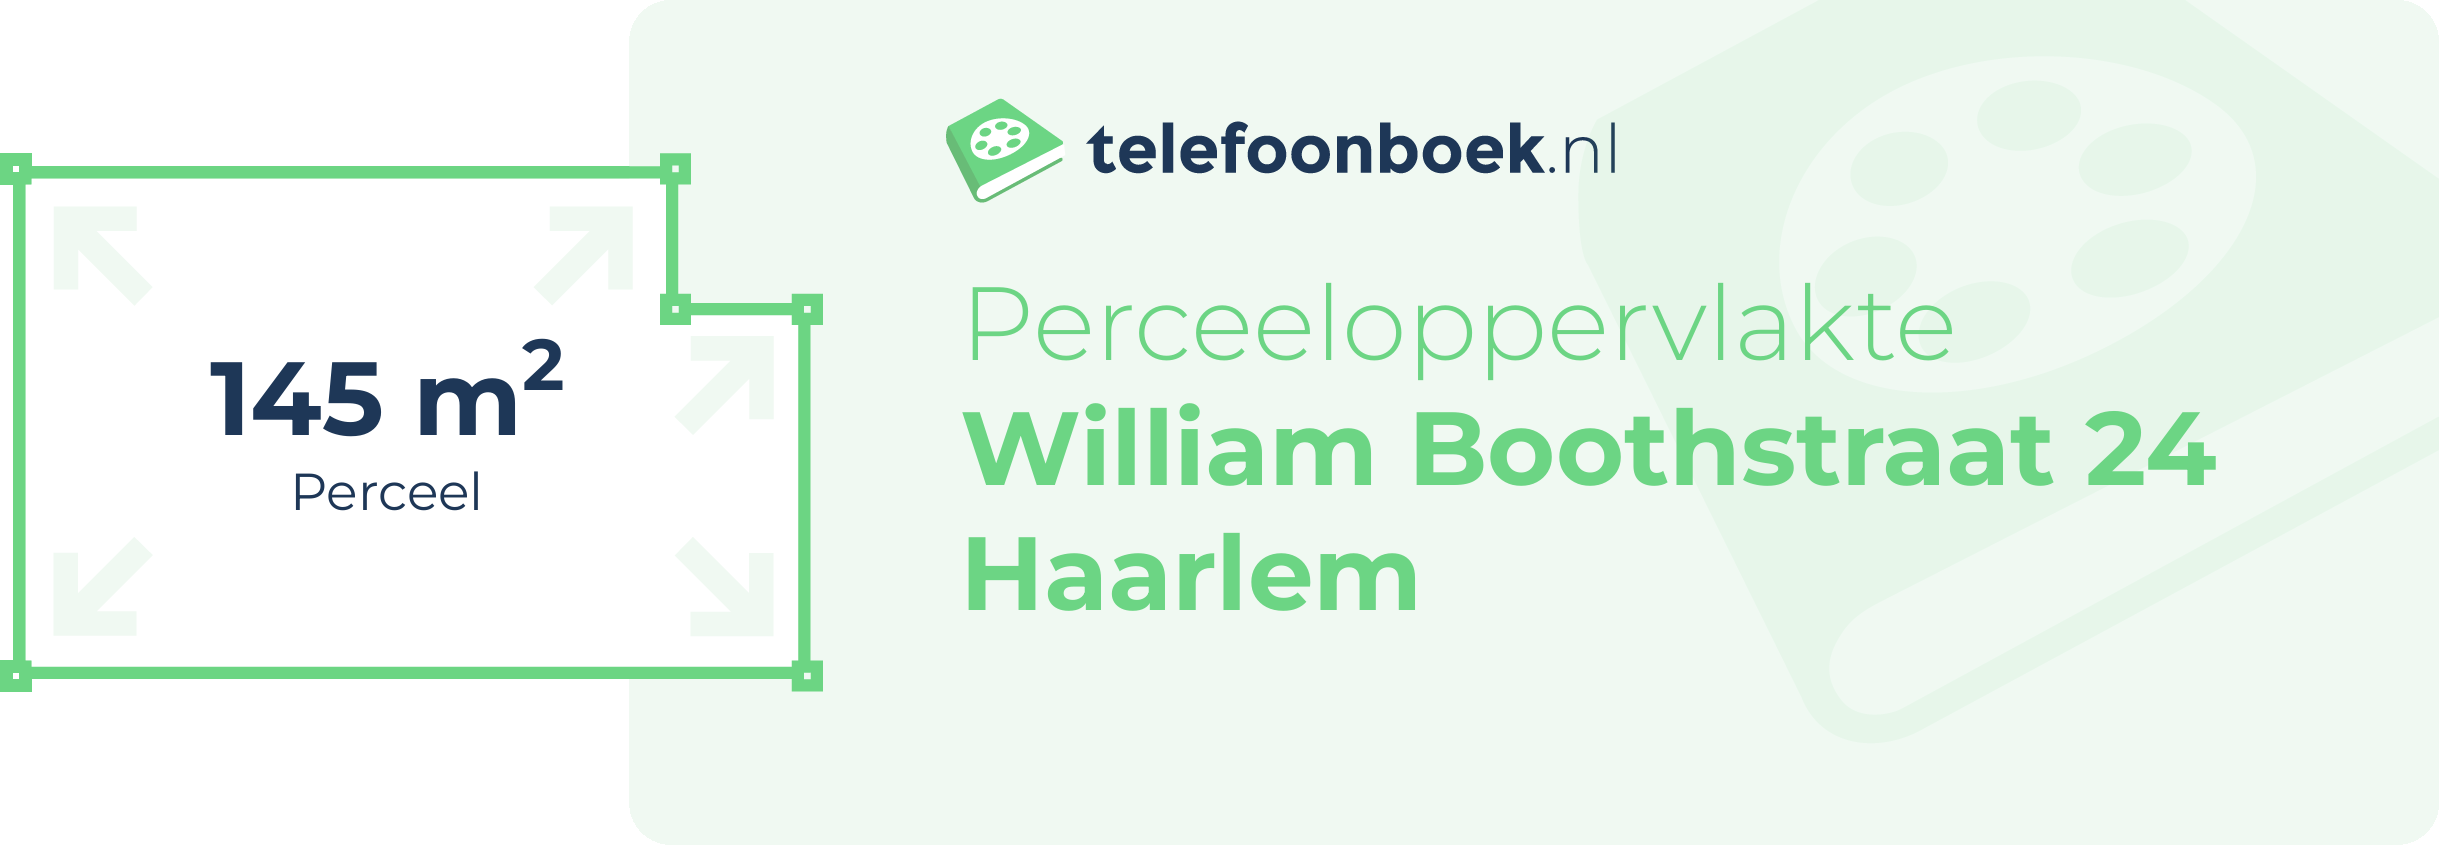 Perceeloppervlakte William Boothstraat 24 Haarlem